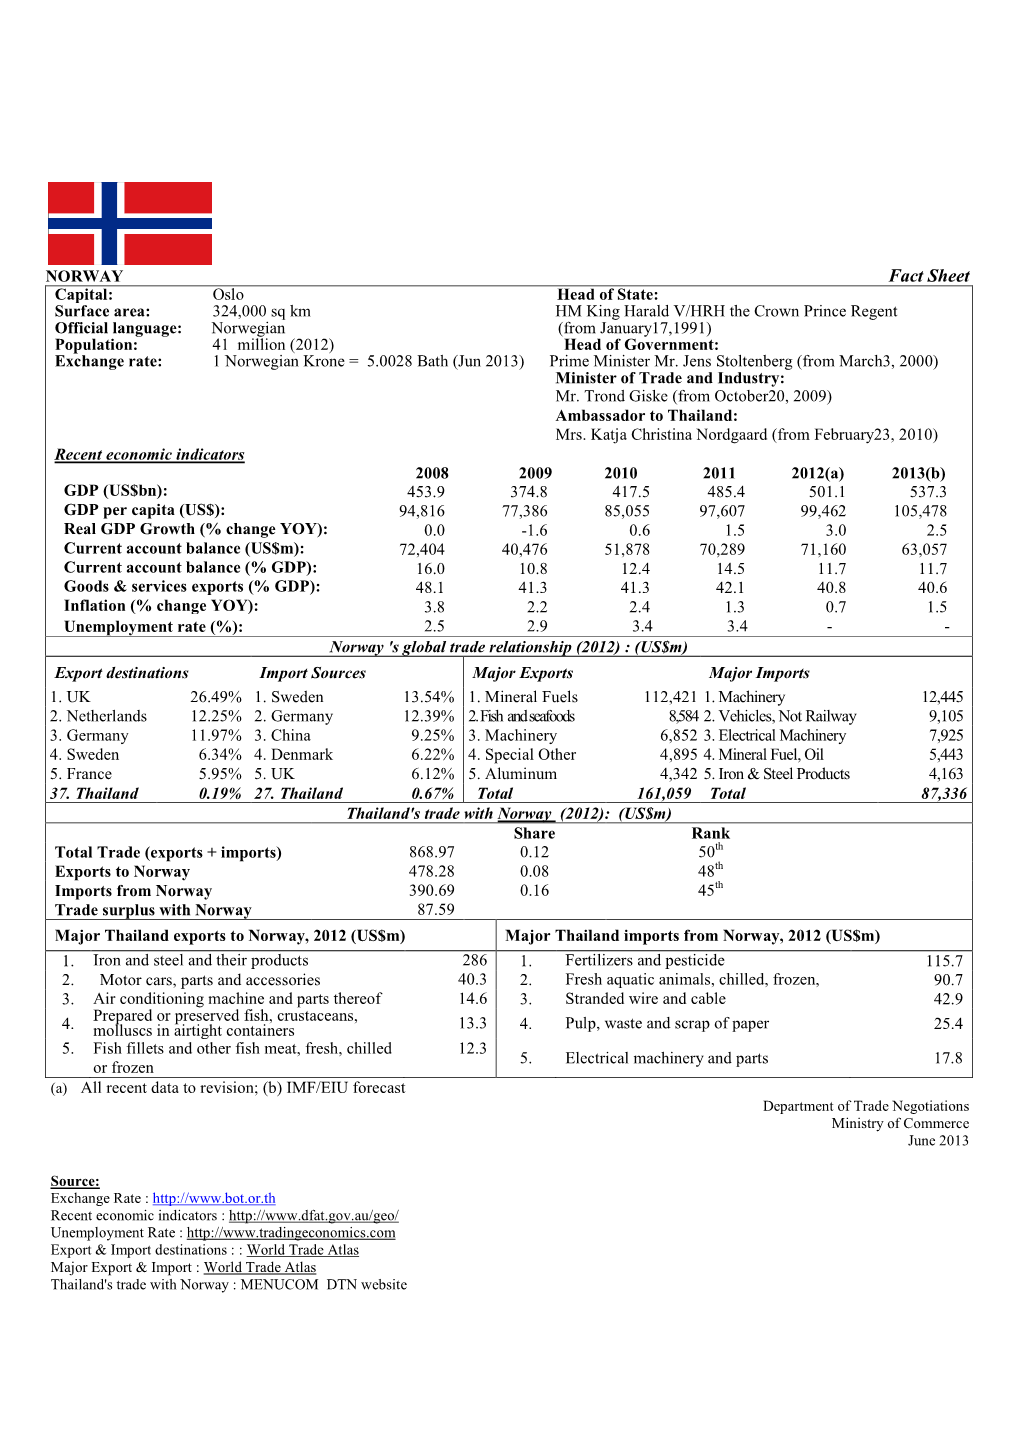 Fact Sheet Norway Jun2013